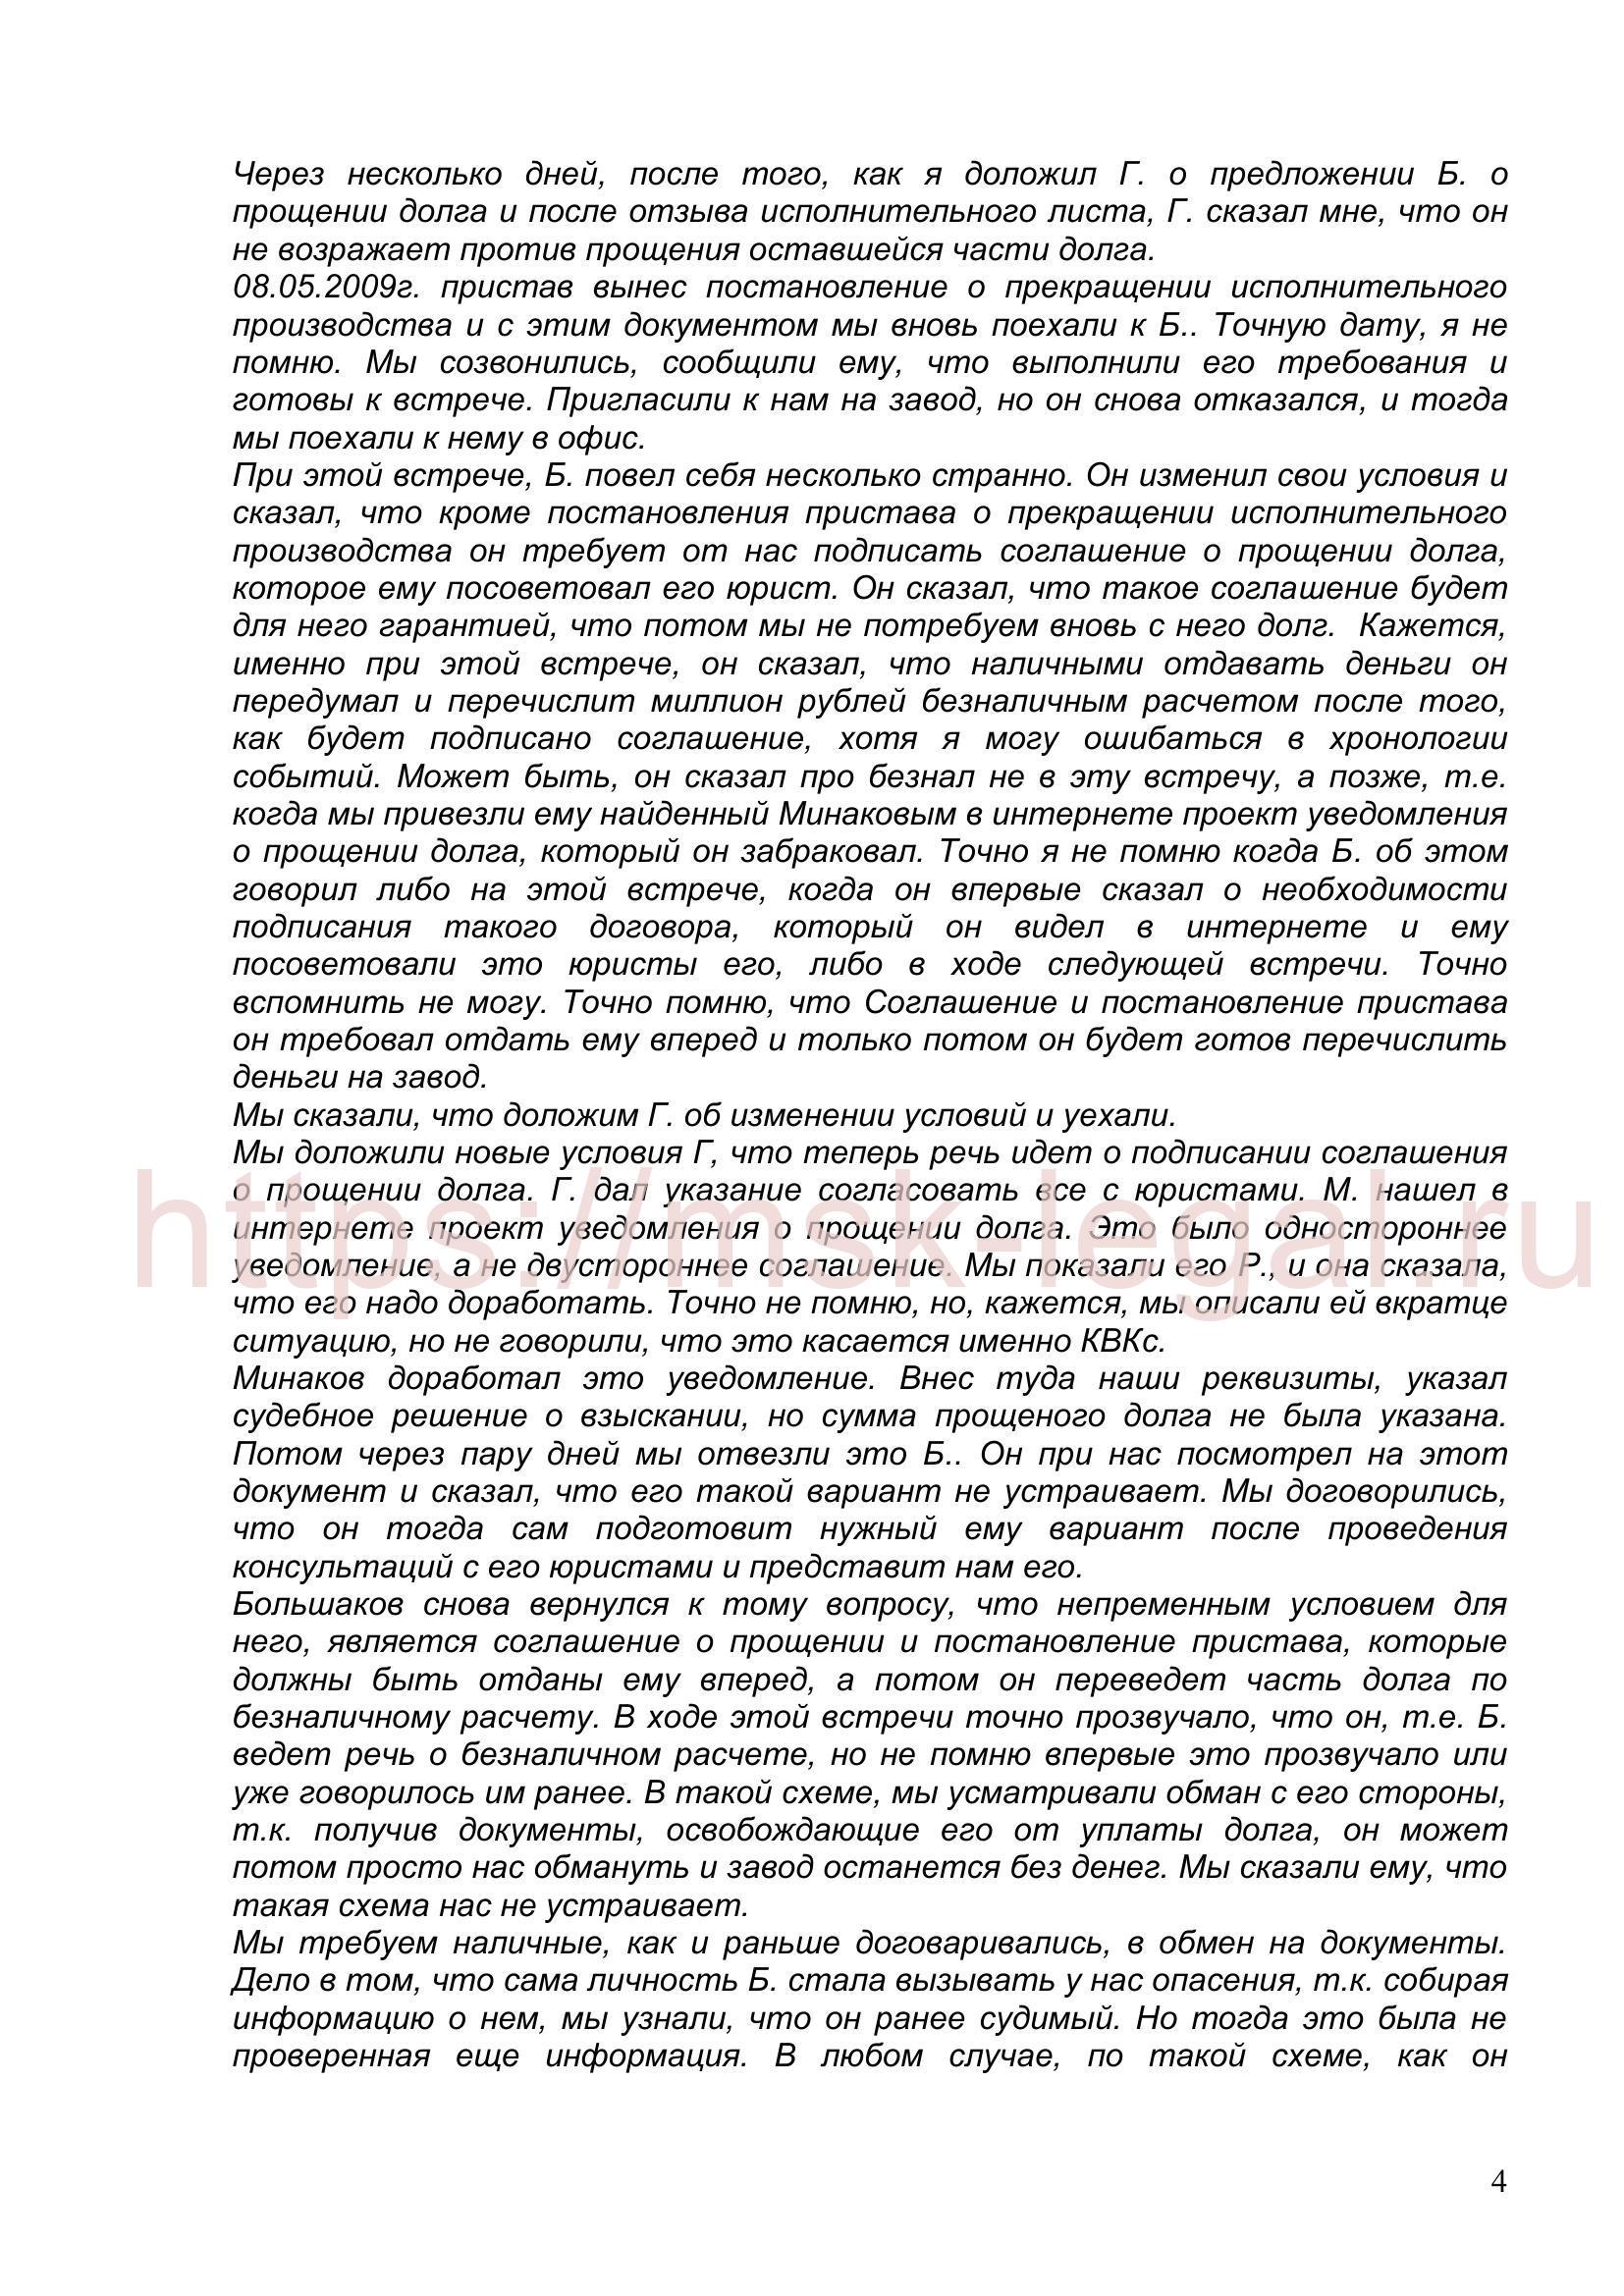 Ходатайство о прекращении уголовного дела по ст. 204 УК РФ на основании п. 2 ч. 1 ст. 24 УПК РФ